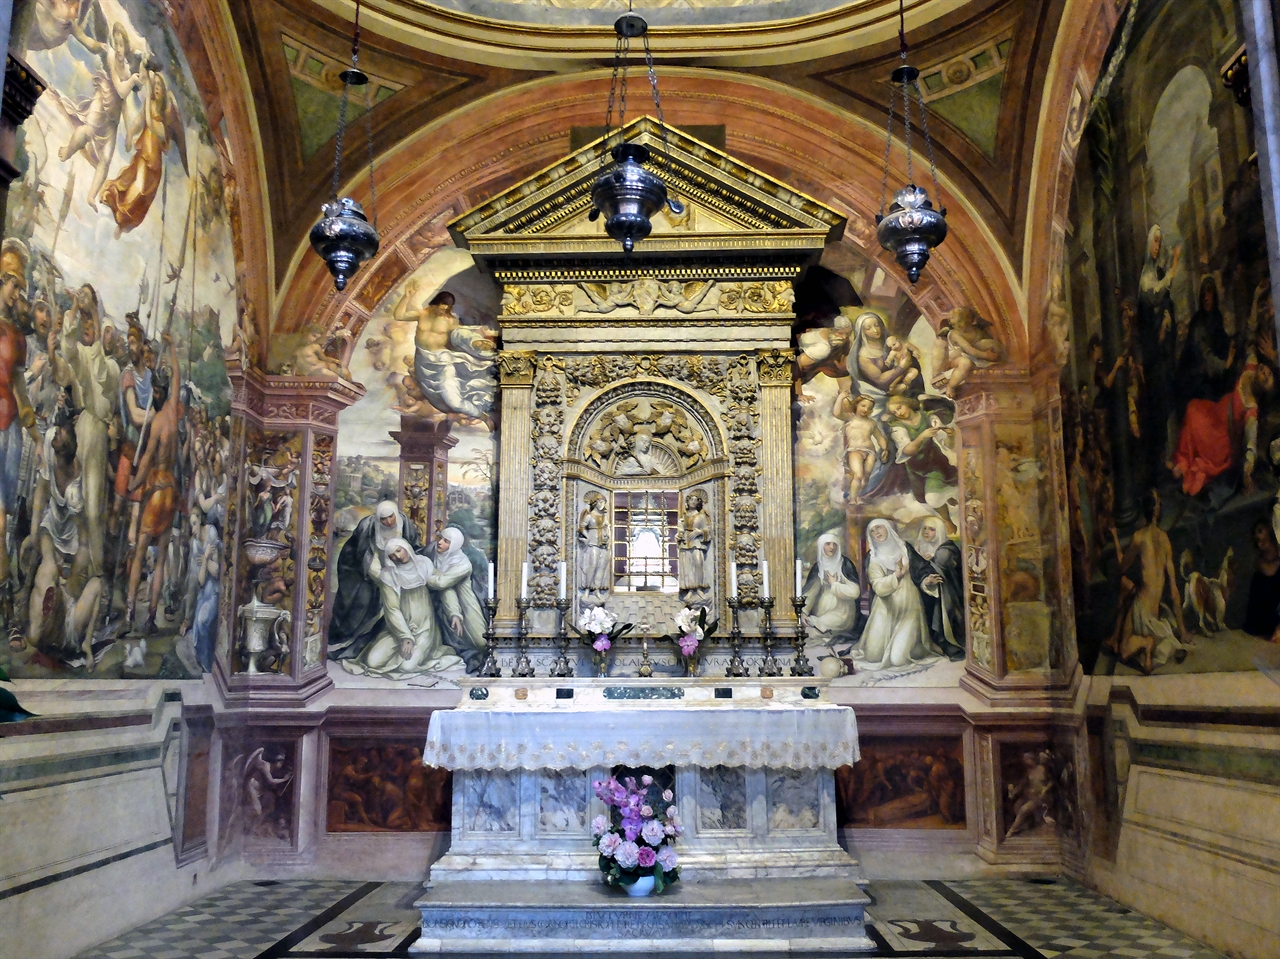 '산 도메니코 성당'에 있는 시에나의 수호 성인, 성 카트리나의 무덤으로 로마의 ‘산타 마리아 소프라 미네르바 성당’에도 그녀의 무덤이 있습니다. 안드레아 디 반니의 그림 ‘카트리나의 일생'이 그녀의 극적인 삶을 보여줍니다. 